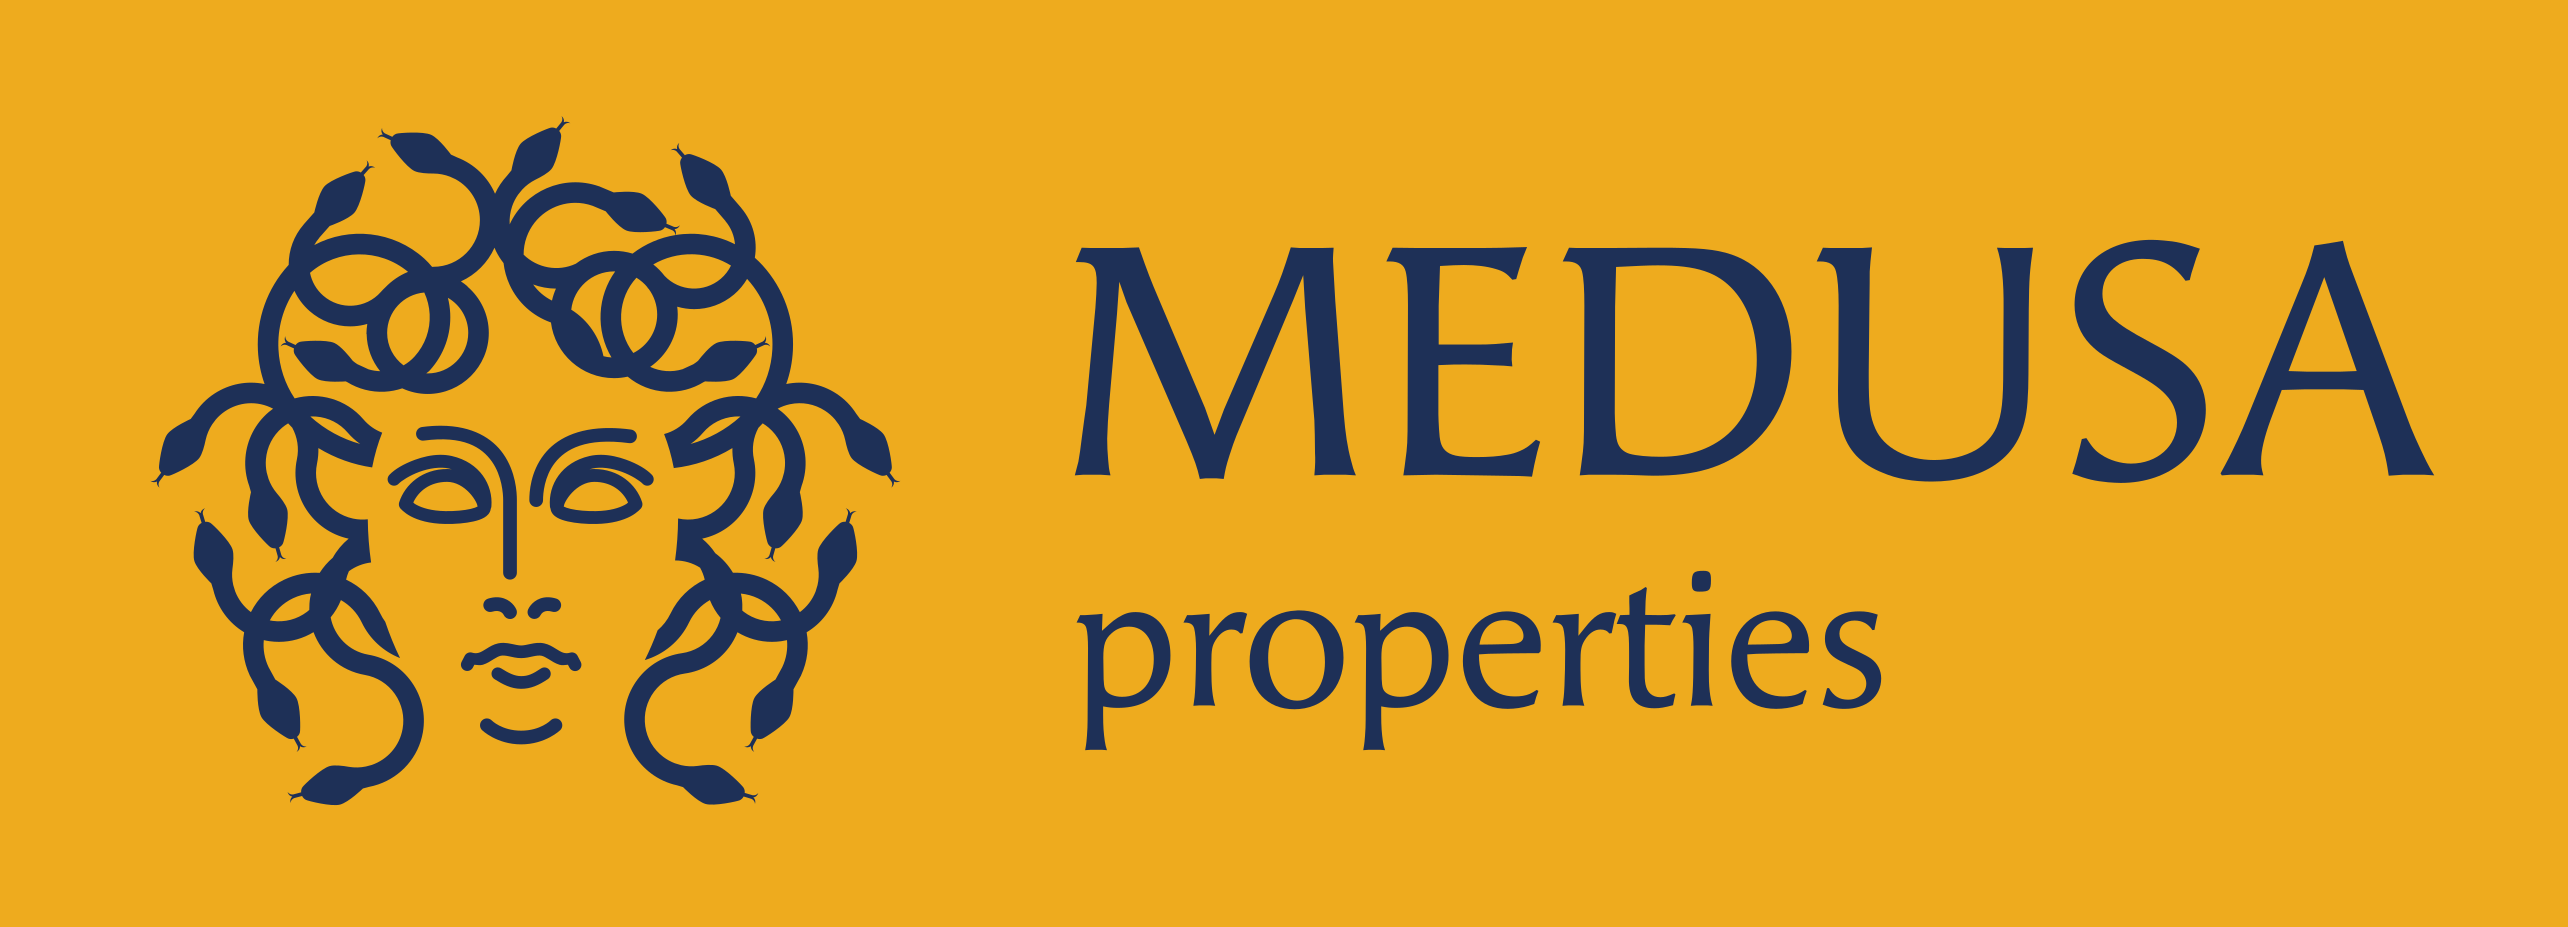 logo Medusa properties hor